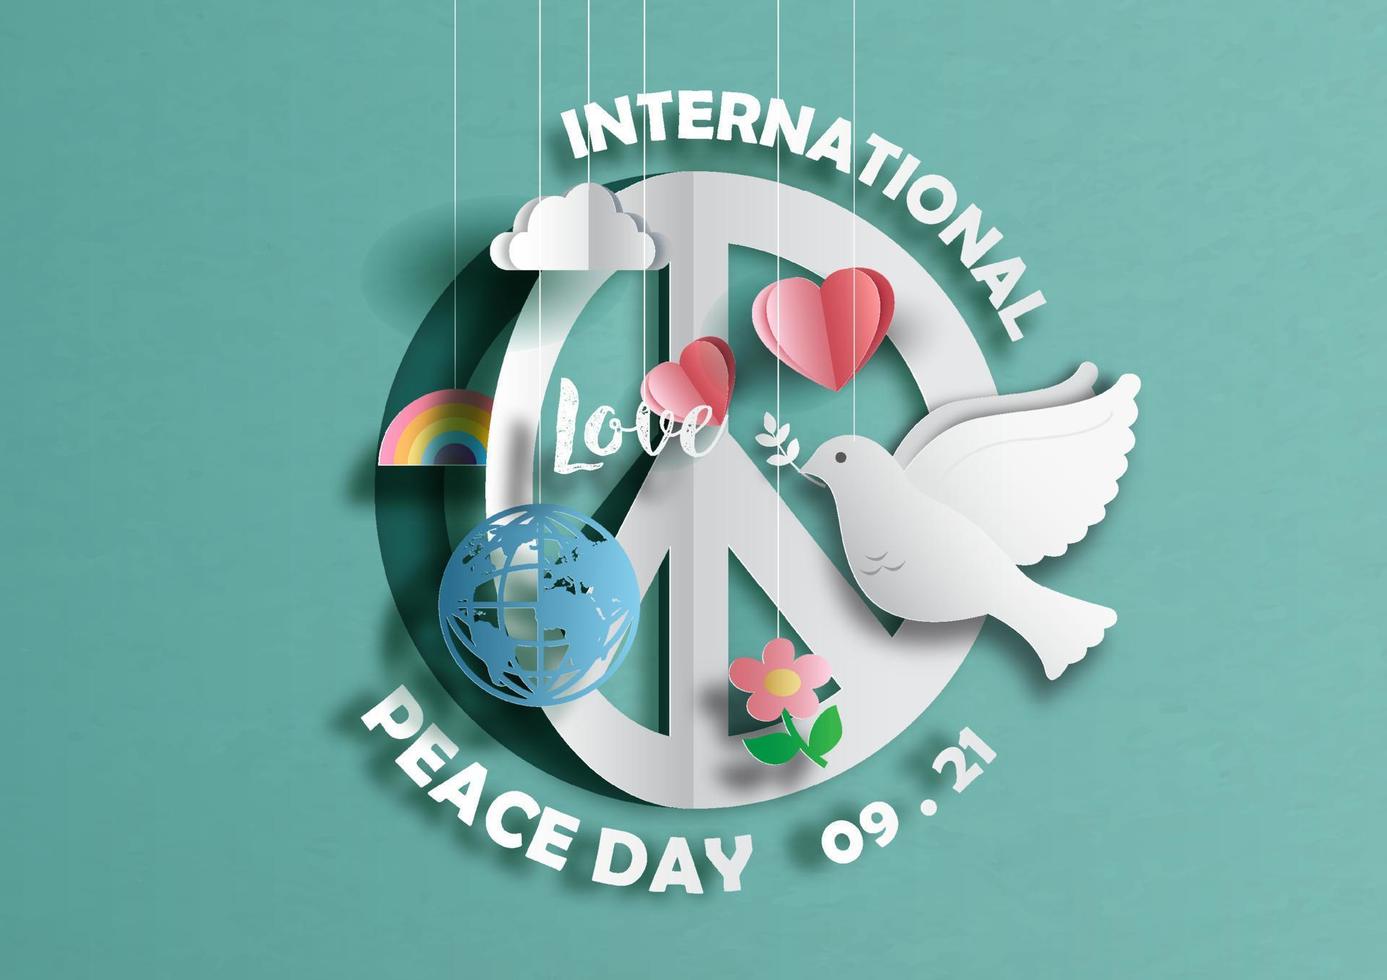 teken en symbolen met de dag en de naam van de internationale vredesdag in papierstijl op de achtergrond van het groenboekpatroon. vector